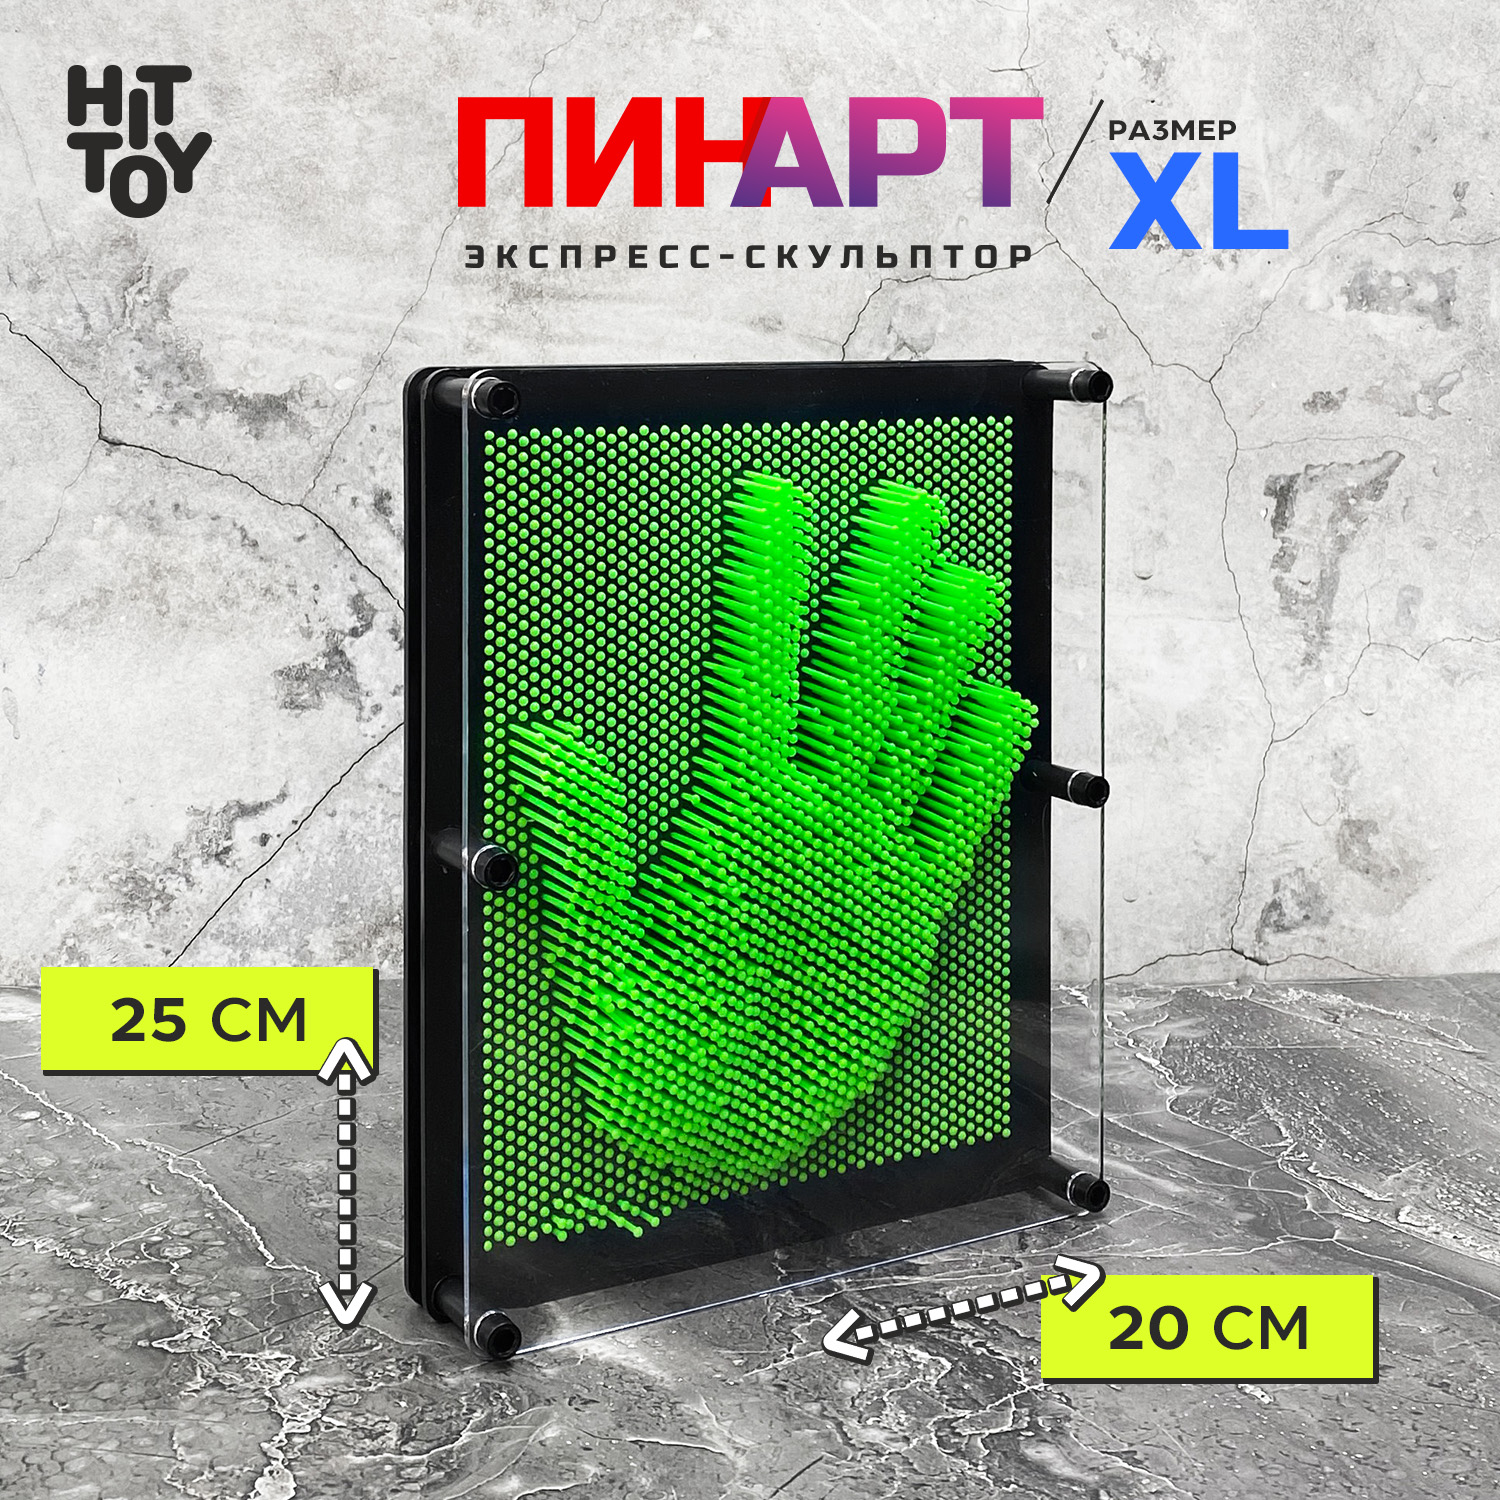 Игрушка-антистресс HitToy Экспресс-скульптор Pinart Классик XL зеленый - фото 1